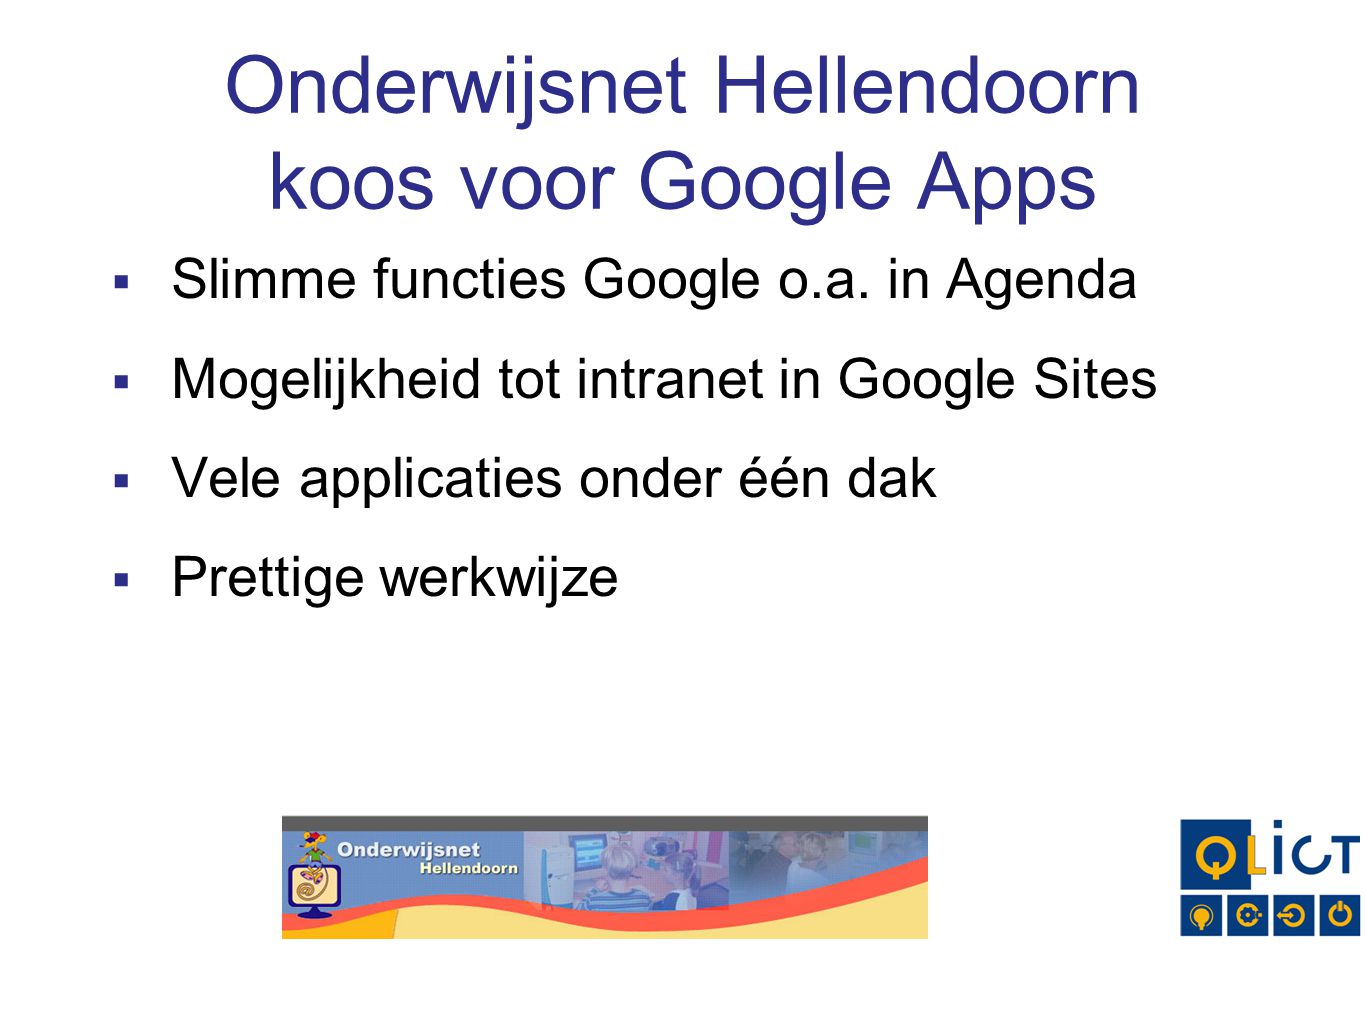 Onderwijsnet Hellendoorn koos voor Google Apps